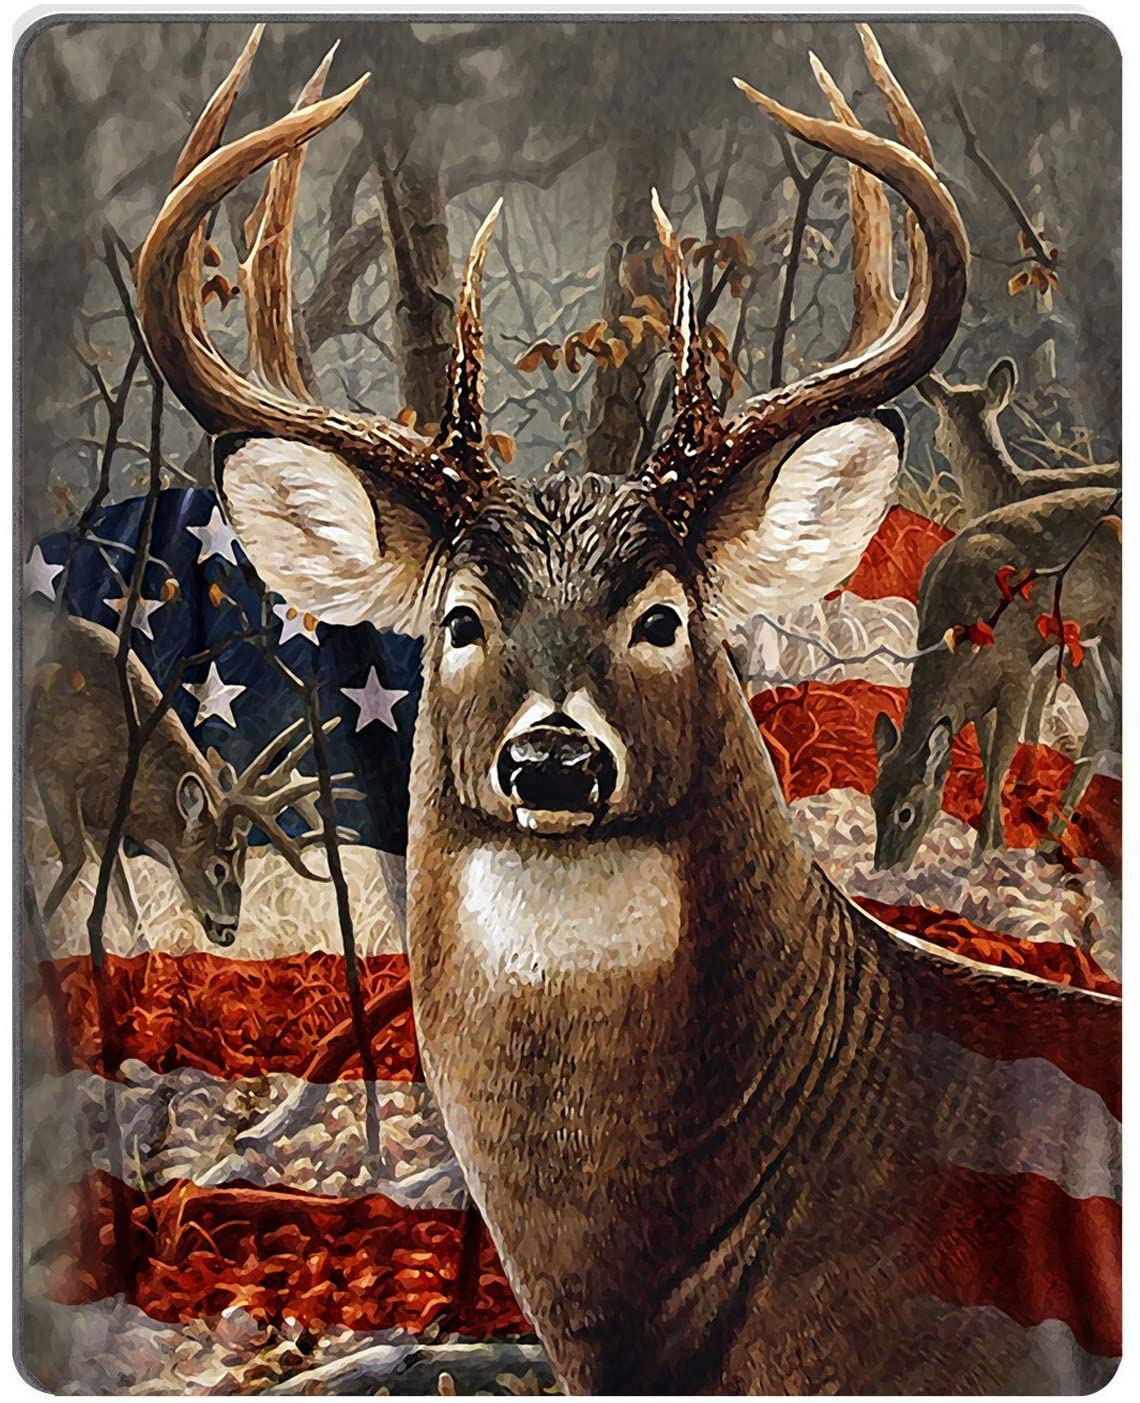 4567 Deer Flag Images Stock Photos  Vectors  Shutterstock